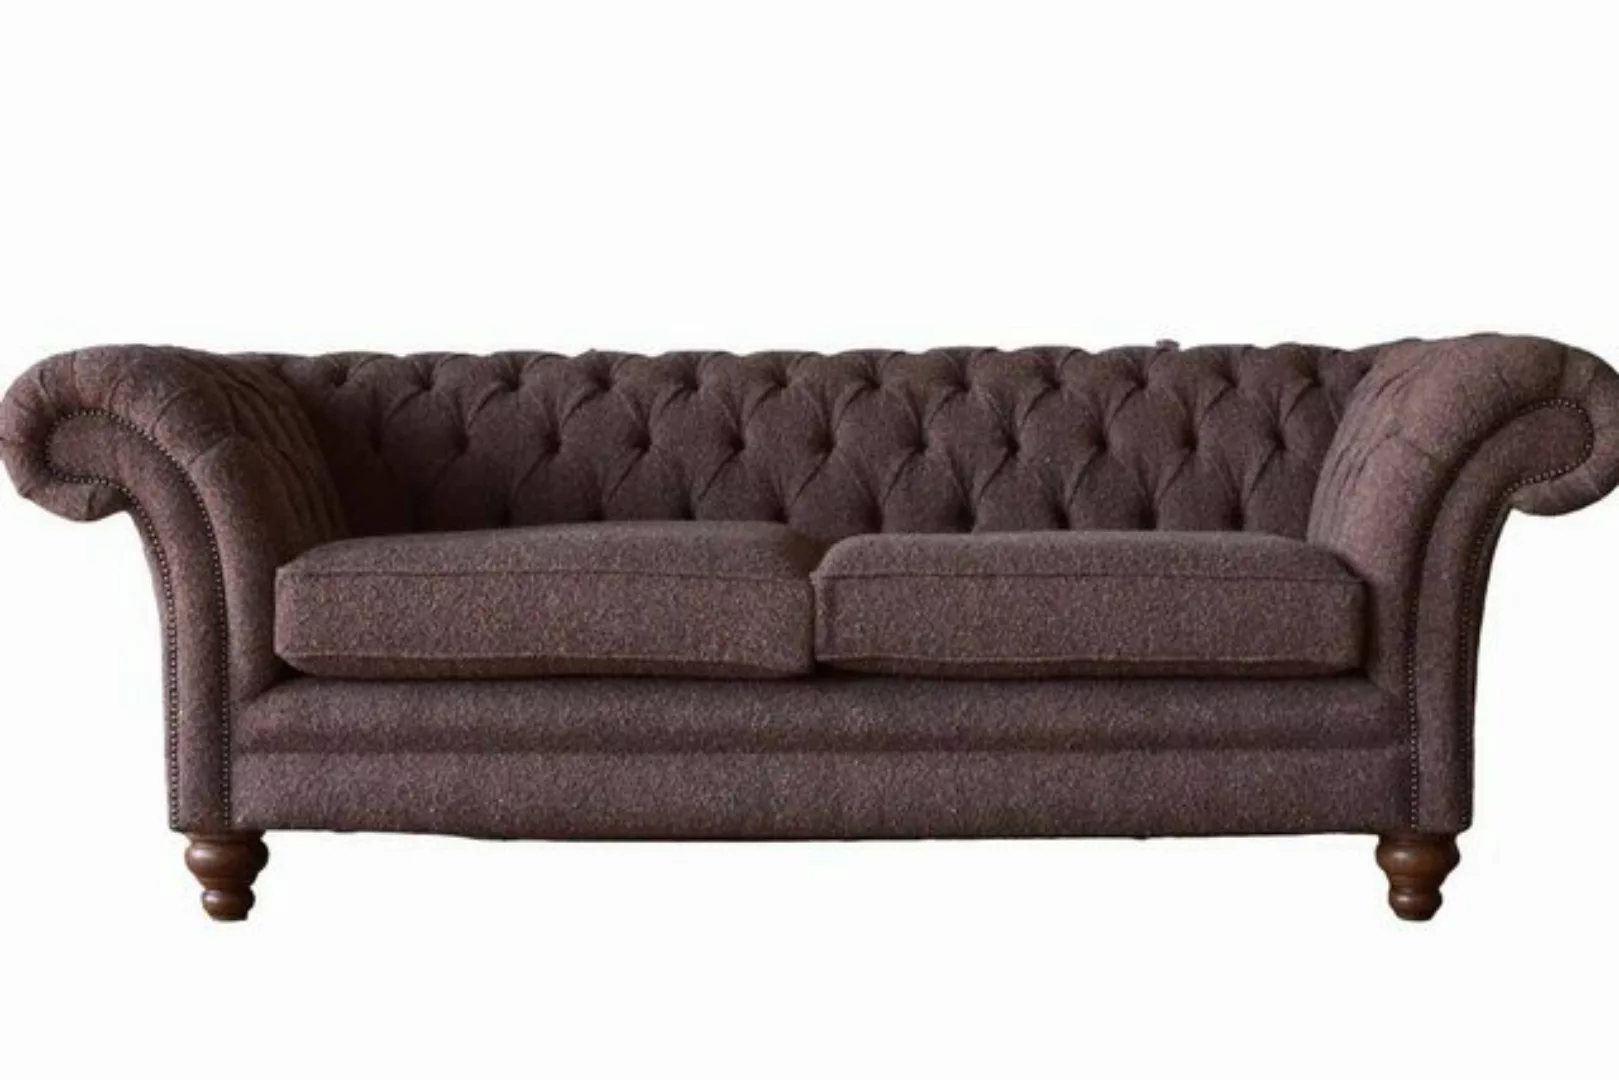 JVmoebel Sofa Big Chesterfield englisch klassischer Stil Sofa Couch 3 Sitz günstig online kaufen